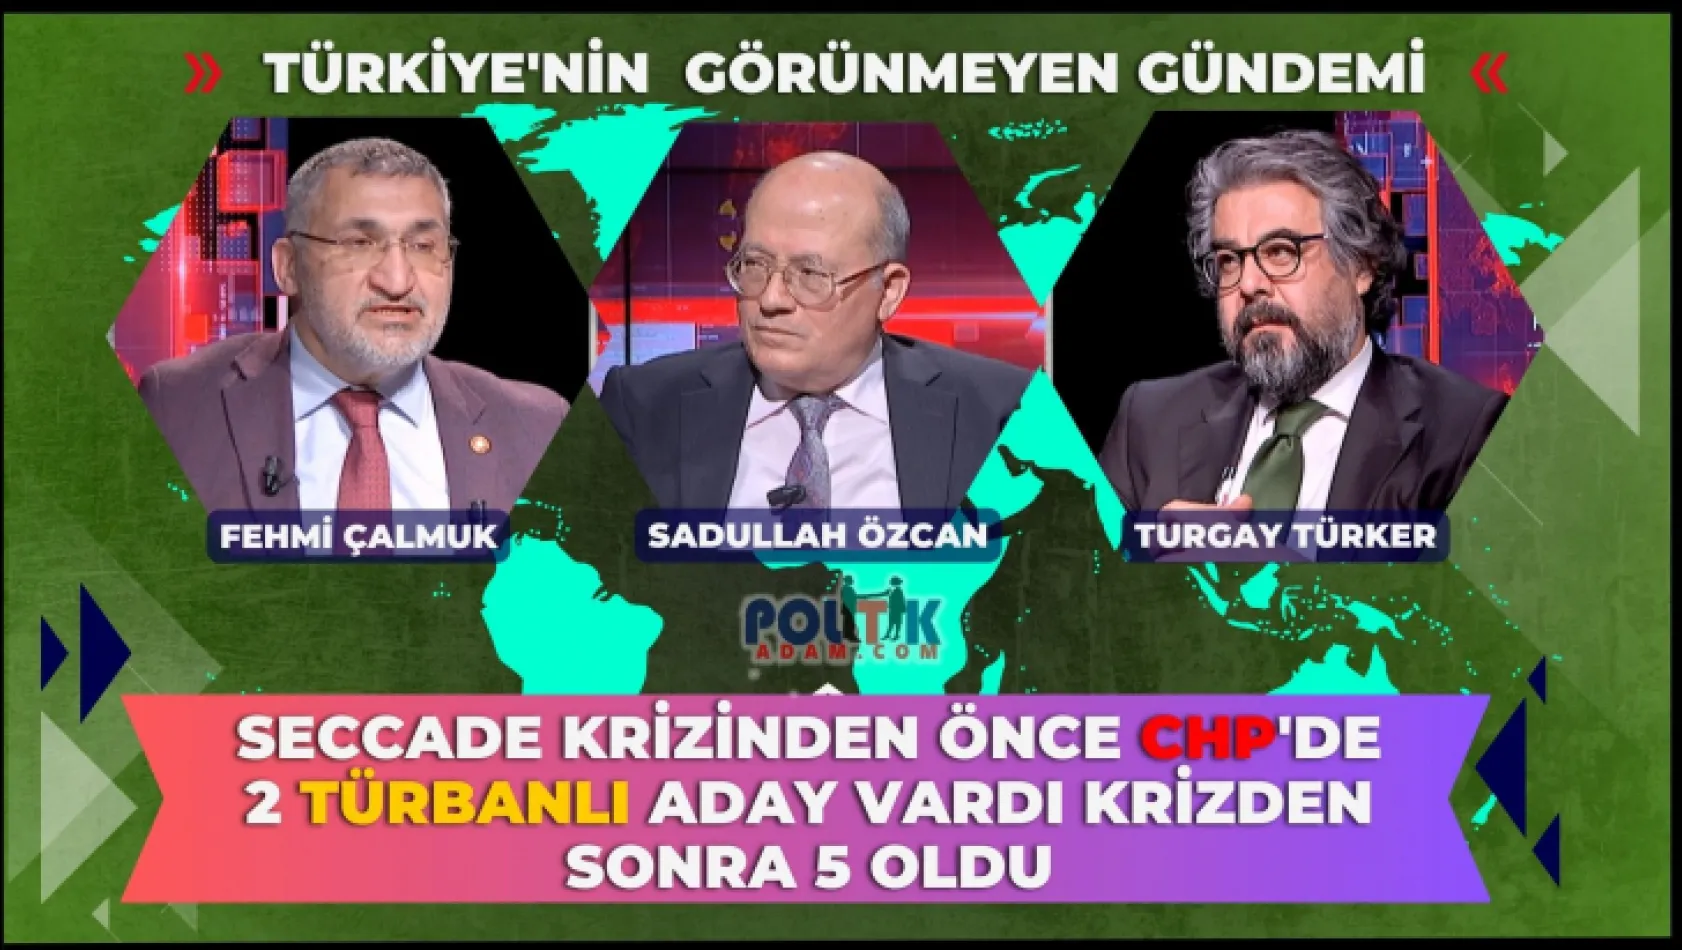 Kemal Kılıçdaroğlu'na Seccade Olayında Kumpas Kuruldu mu?